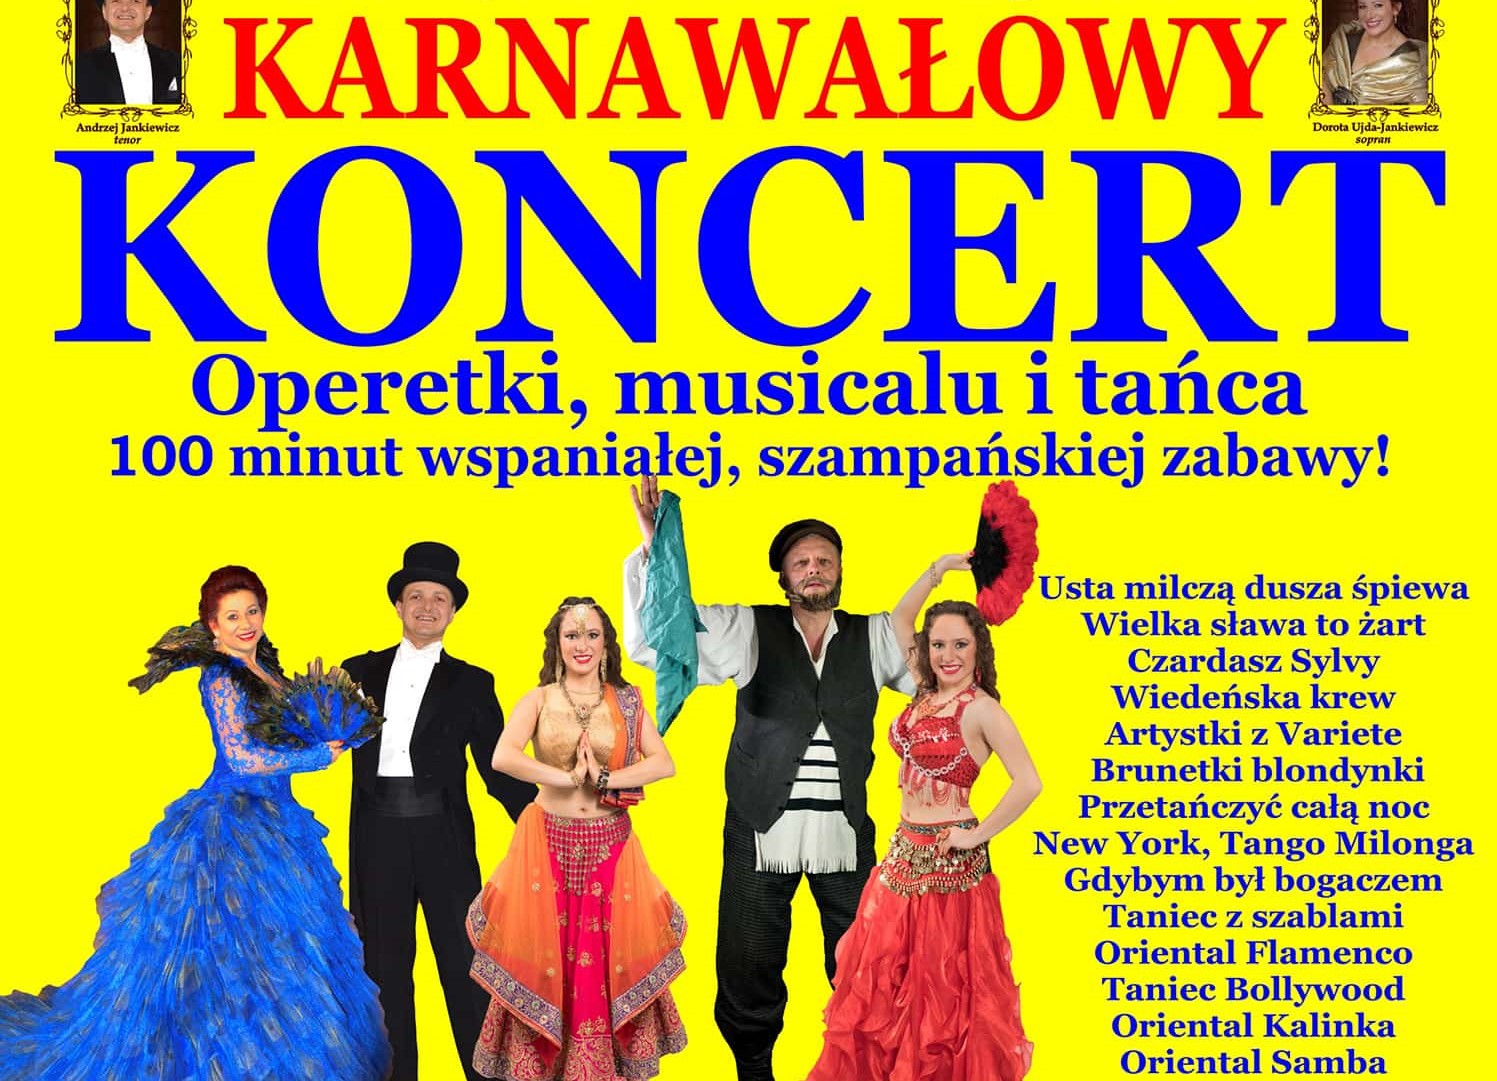 Operetka, musical i taniec, czyli karnawałowy koncert w Muzie